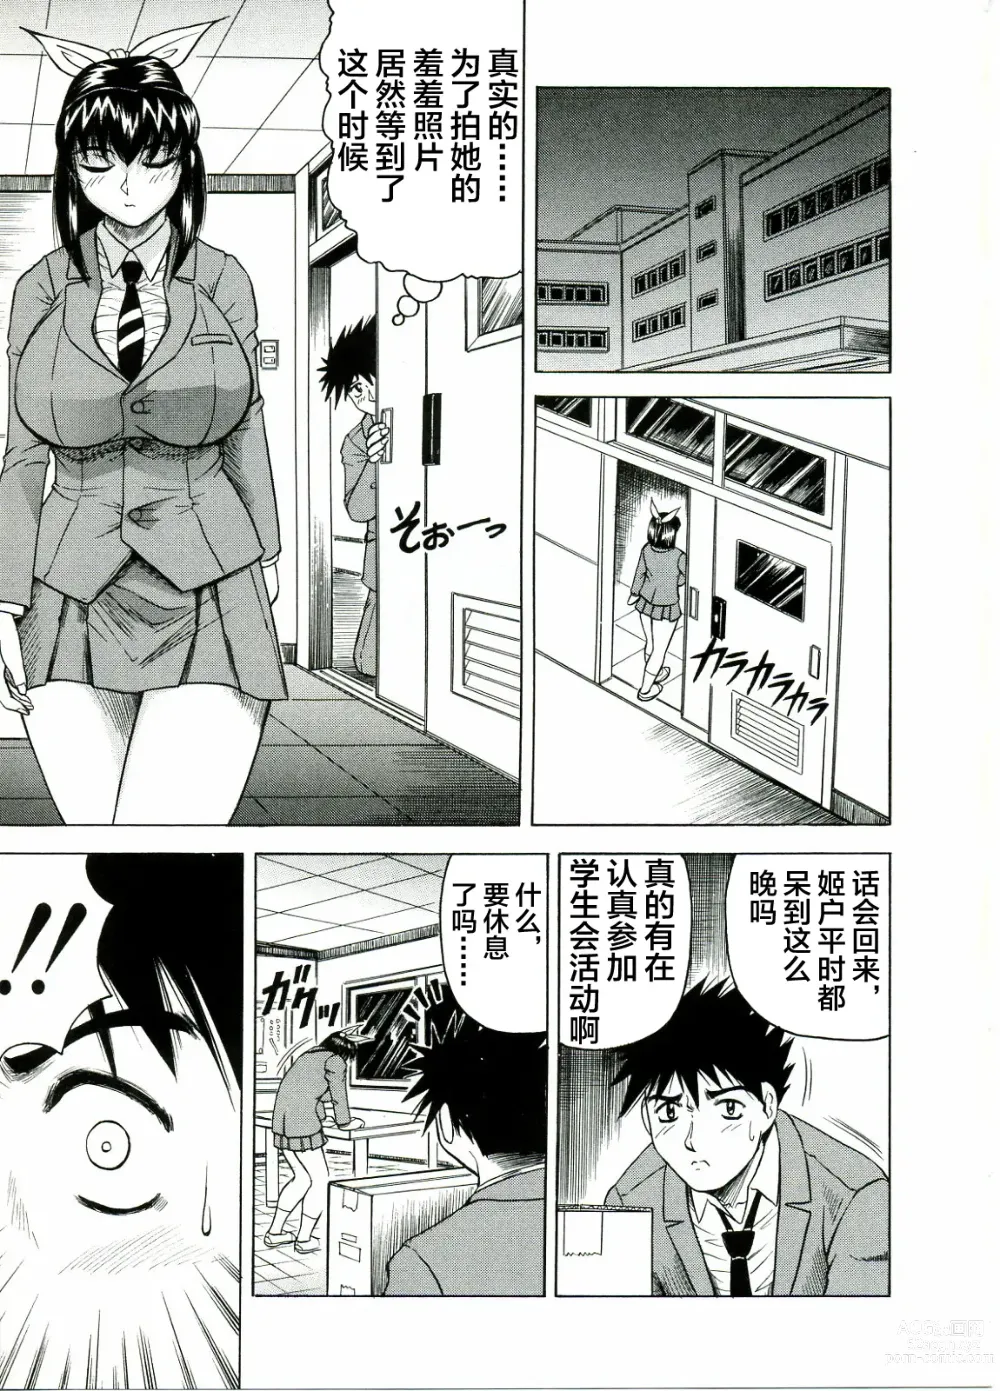 Page 11 of manga Tames